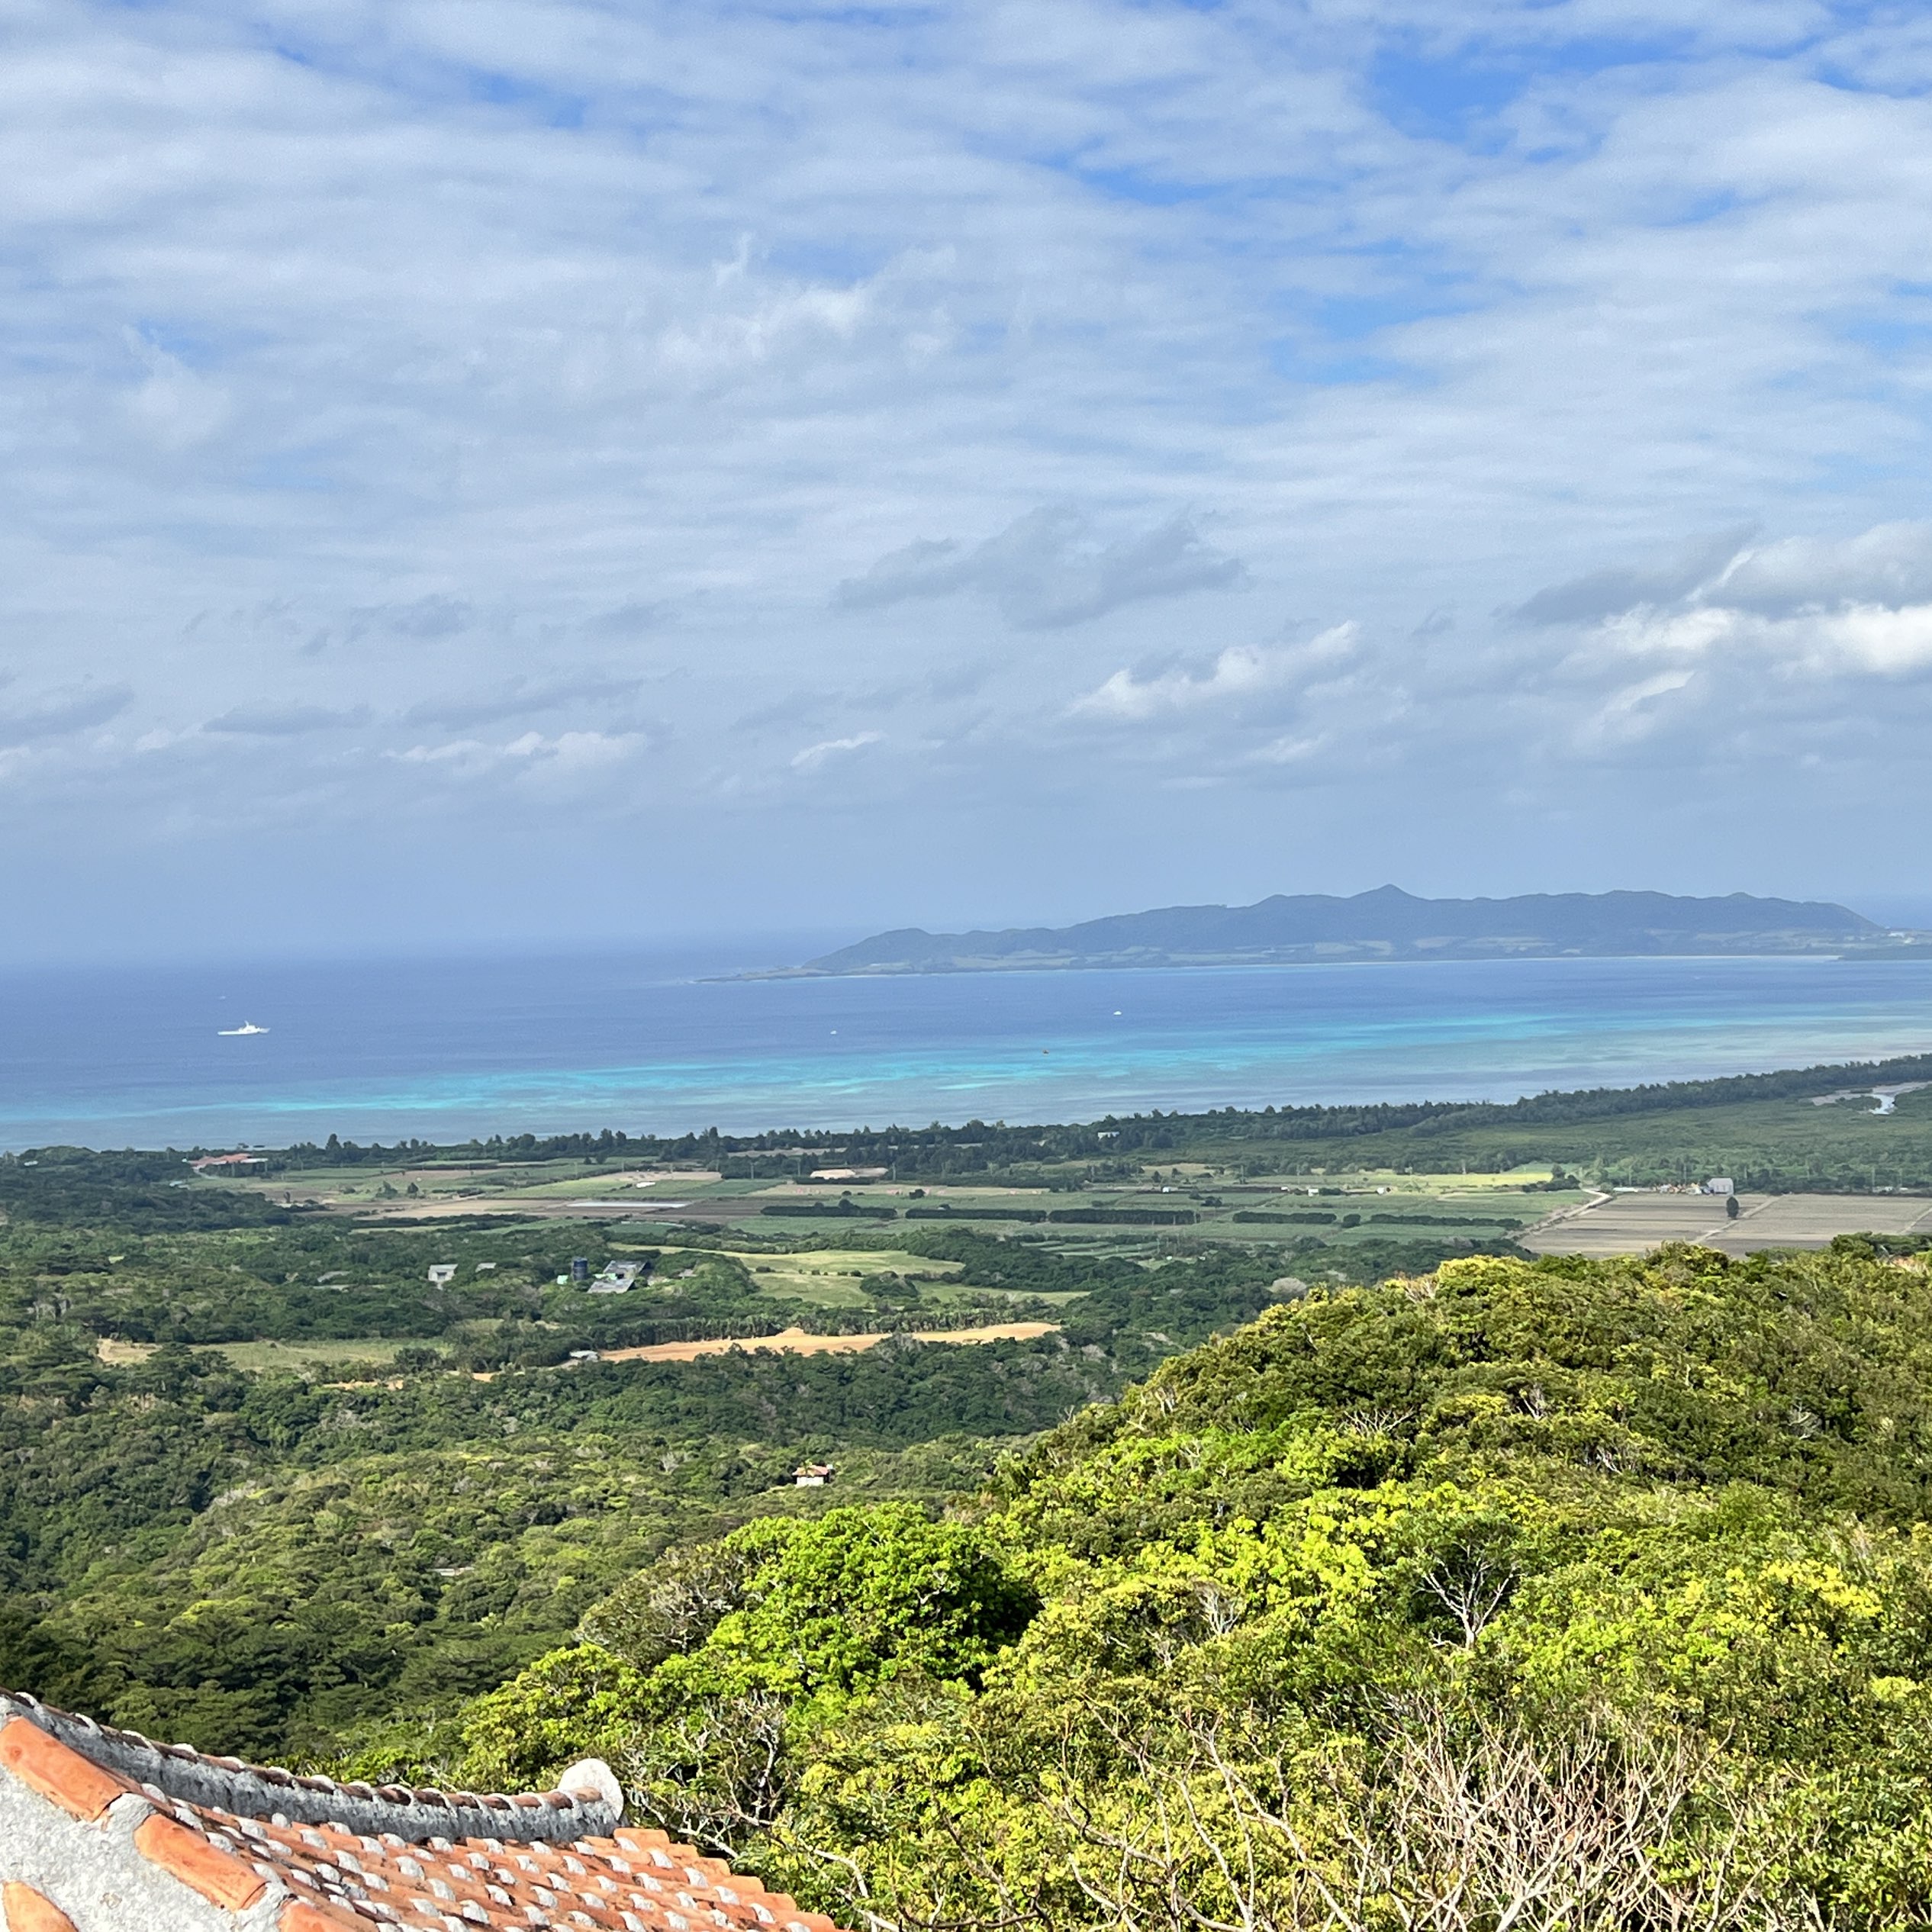 石垣岛市内附近的绝景景点 观赏翡翠海的展望台